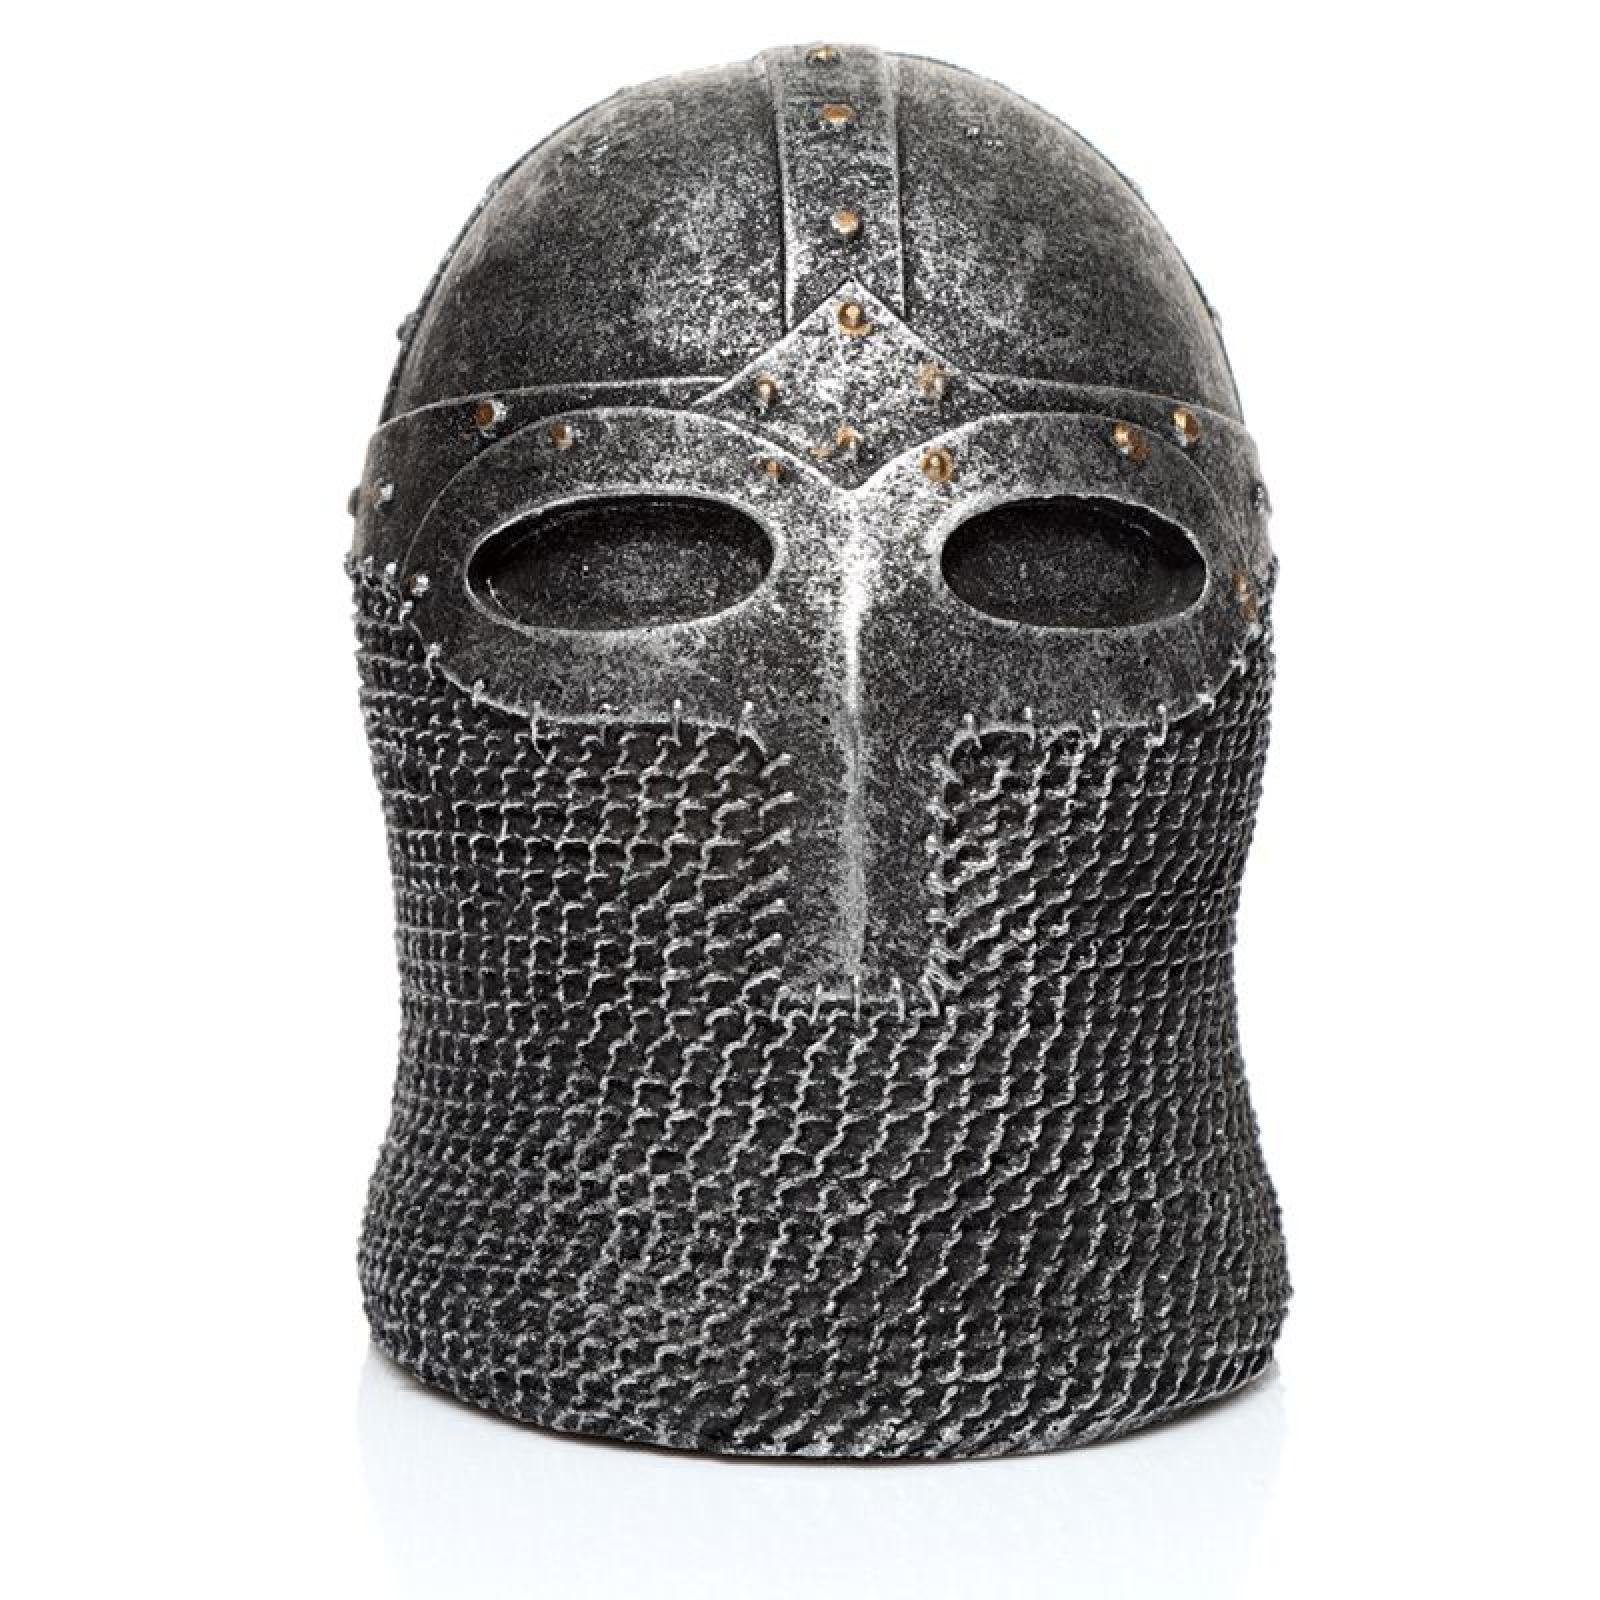 Puckator Dekofigur Mittelalterlicher Ritter Kettenhemd Helm Figur (pro Stück)